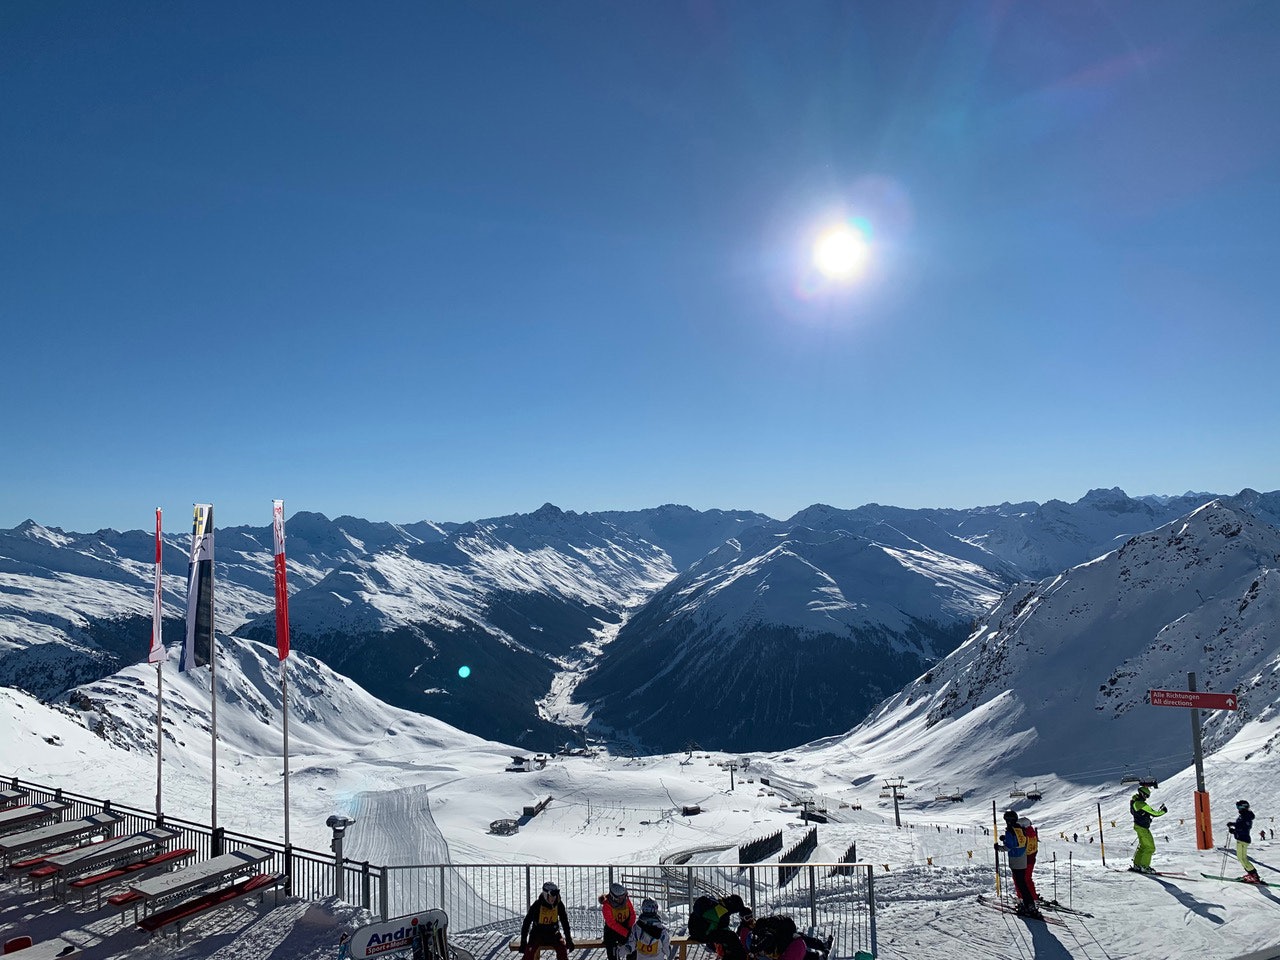 DAVOS: ...og Klosters i Sveits er bare en togtur unna - og har frikjøring i verdensklasse når forholdene er fine! Her er utsikten fra knutepunktet Parsenn og Weissfluhjoch. Foto: Endre Løvaas